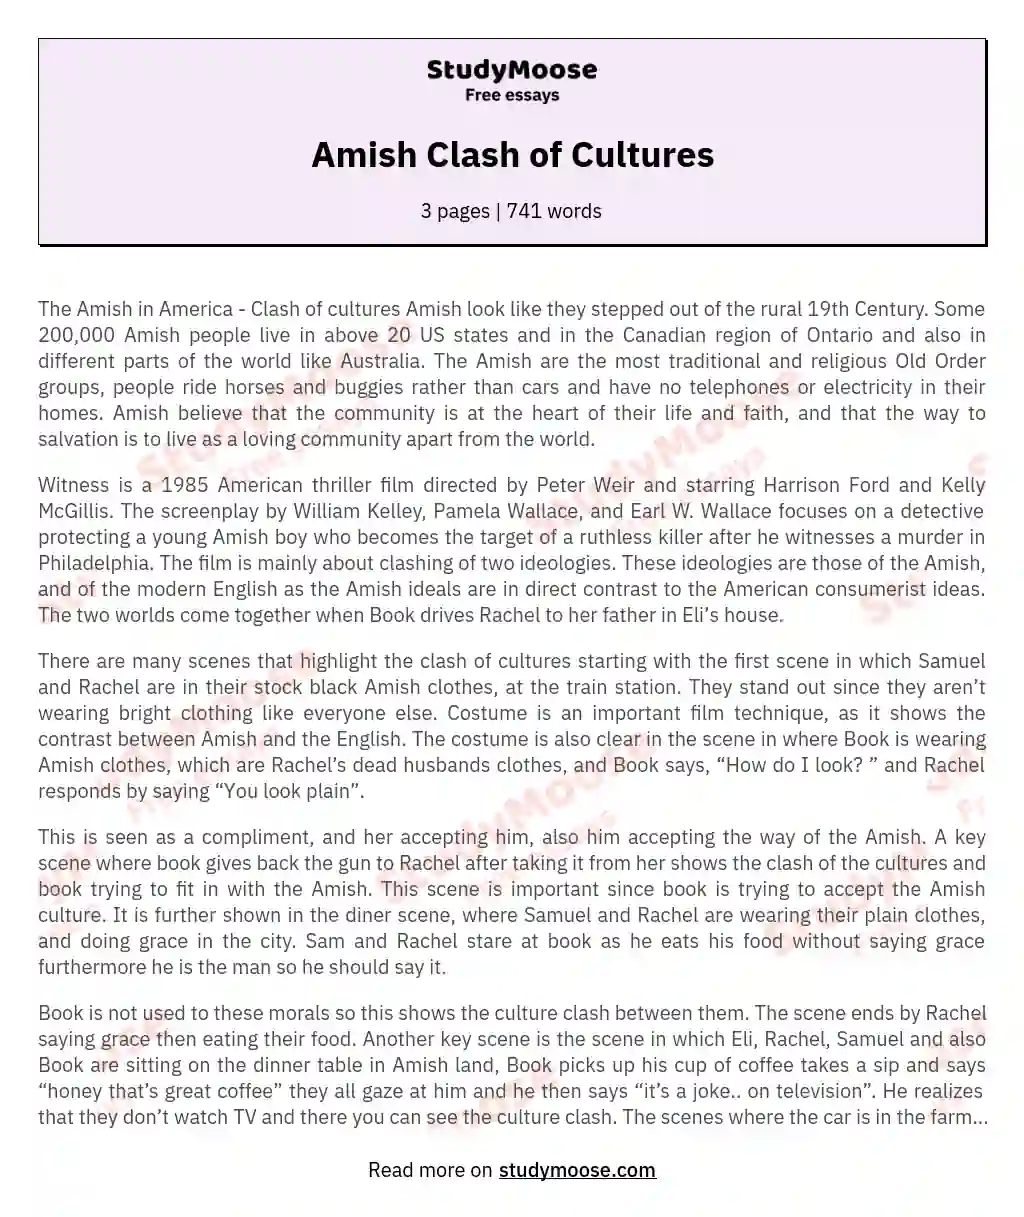 Amish Clash of Cultures essay